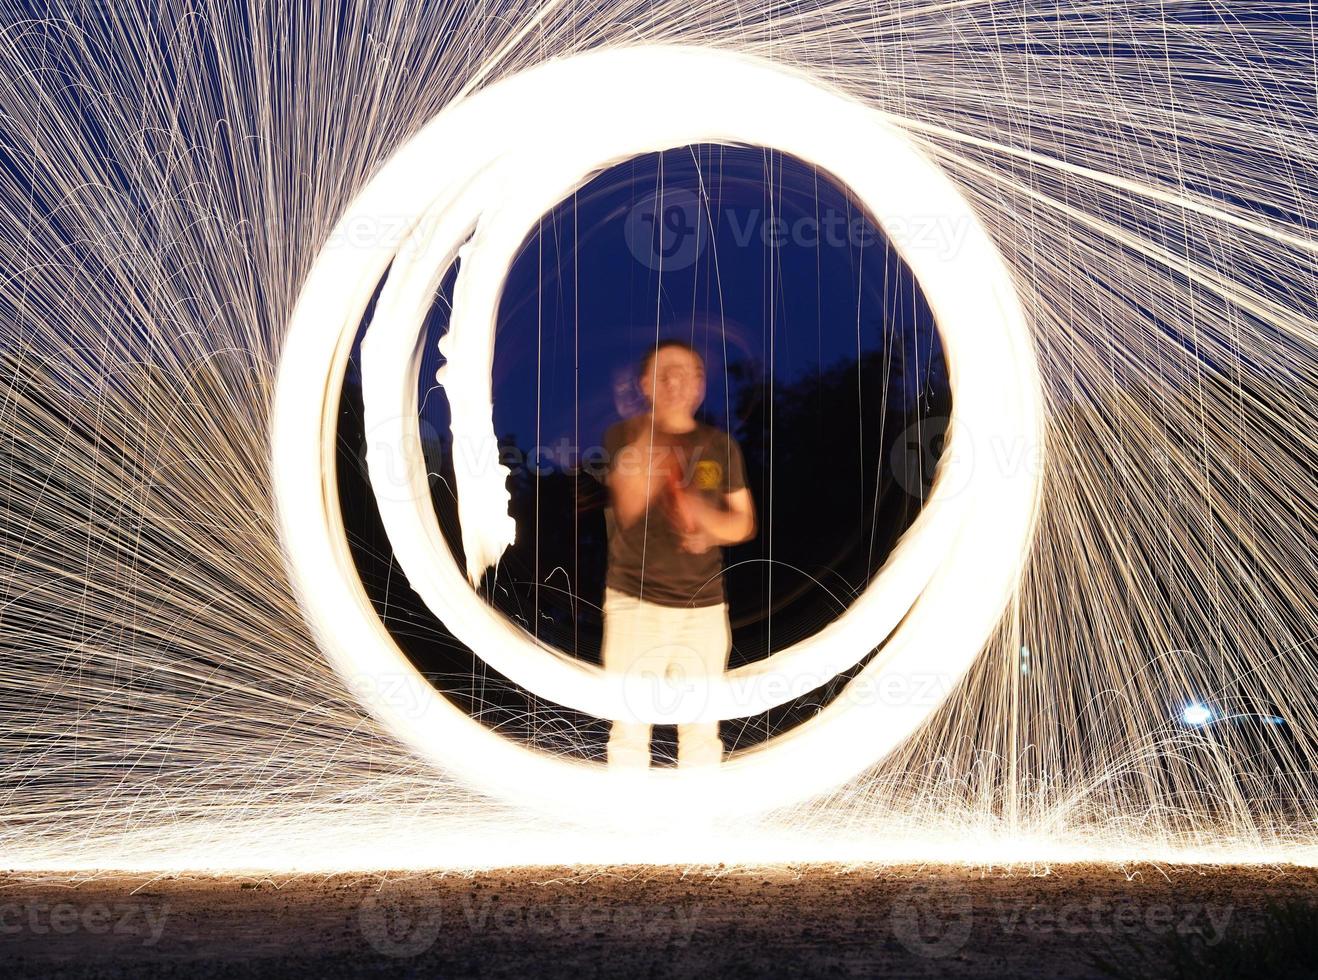 lana de acero giratoria y quemada brilla fuego en forma de círculo con obturador de larga velocidad disparar línea de luz brillante al suelo. foto